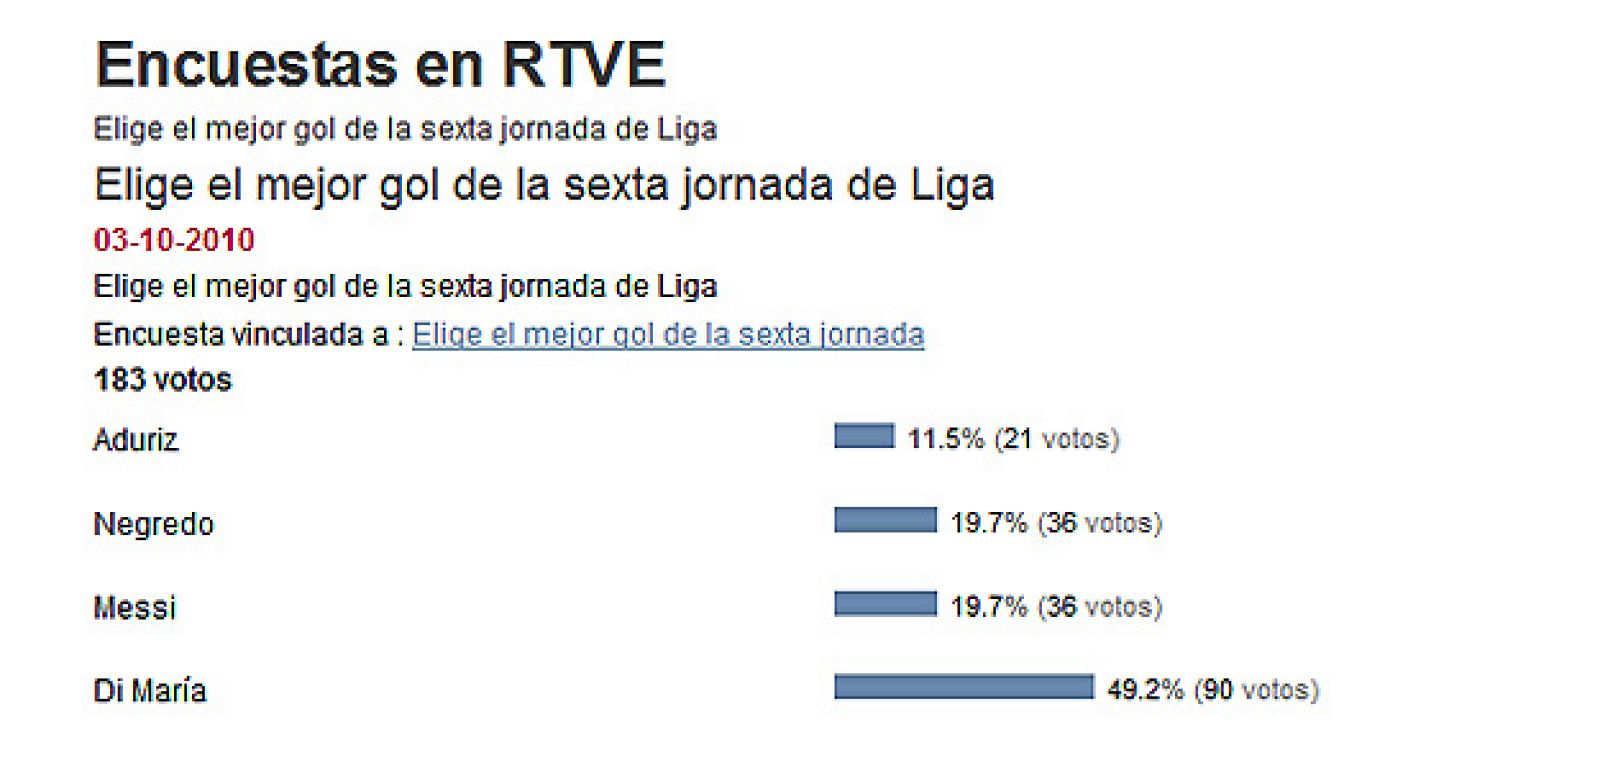 Los usuarios de RTVE.es han elegido el gol de Di María como el mejor tanto de la sexta jornada de Liga.